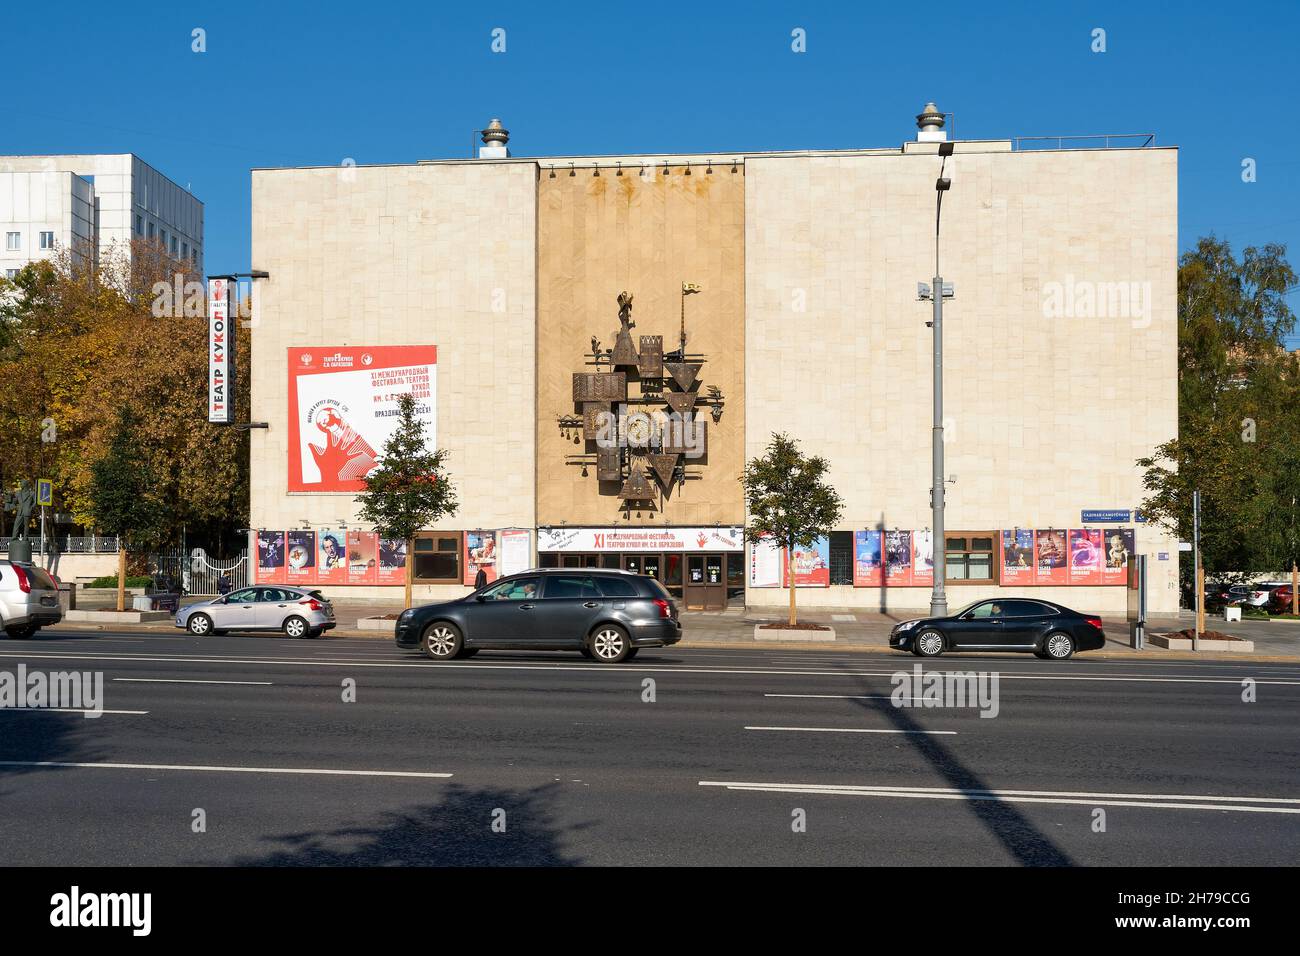 State Academic Central Puppet Theatre prende il nome da S. V. Obraztsov, punto di riferimento: Mosca, Russia - 06 ottobre 2021 Foto Stock